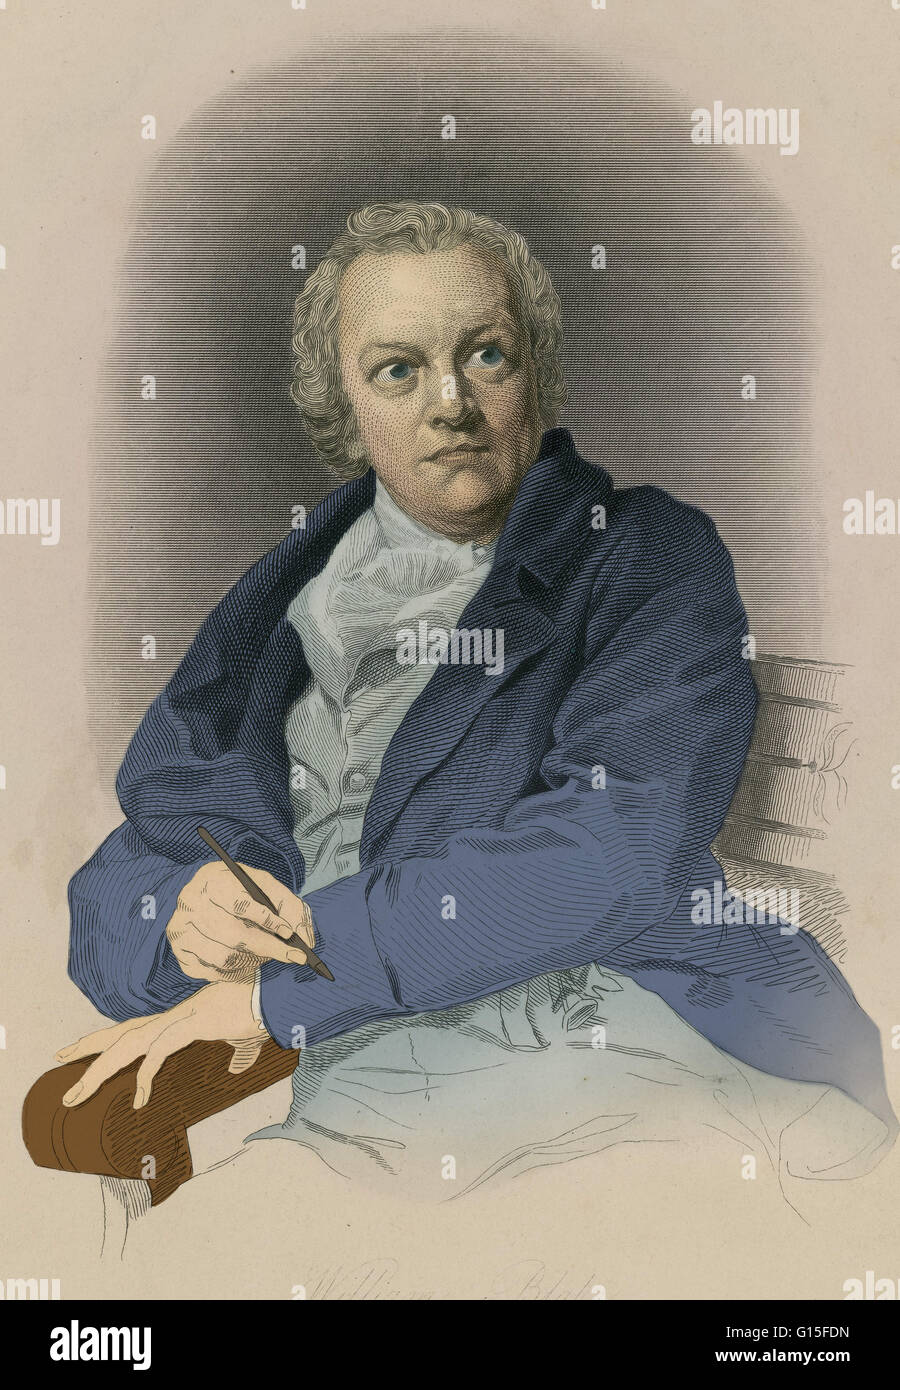 William Blake (1757-1827) était un poète anglais, peintre, graveur et. Blake est considéré comme une figure fondamentale dans l'histoire de la poésie et des arts visuels de l'âge romantique. Sa poésie prophétique a été dit à la forme 'ce qui est en proportion de sa moi Banque D'Images